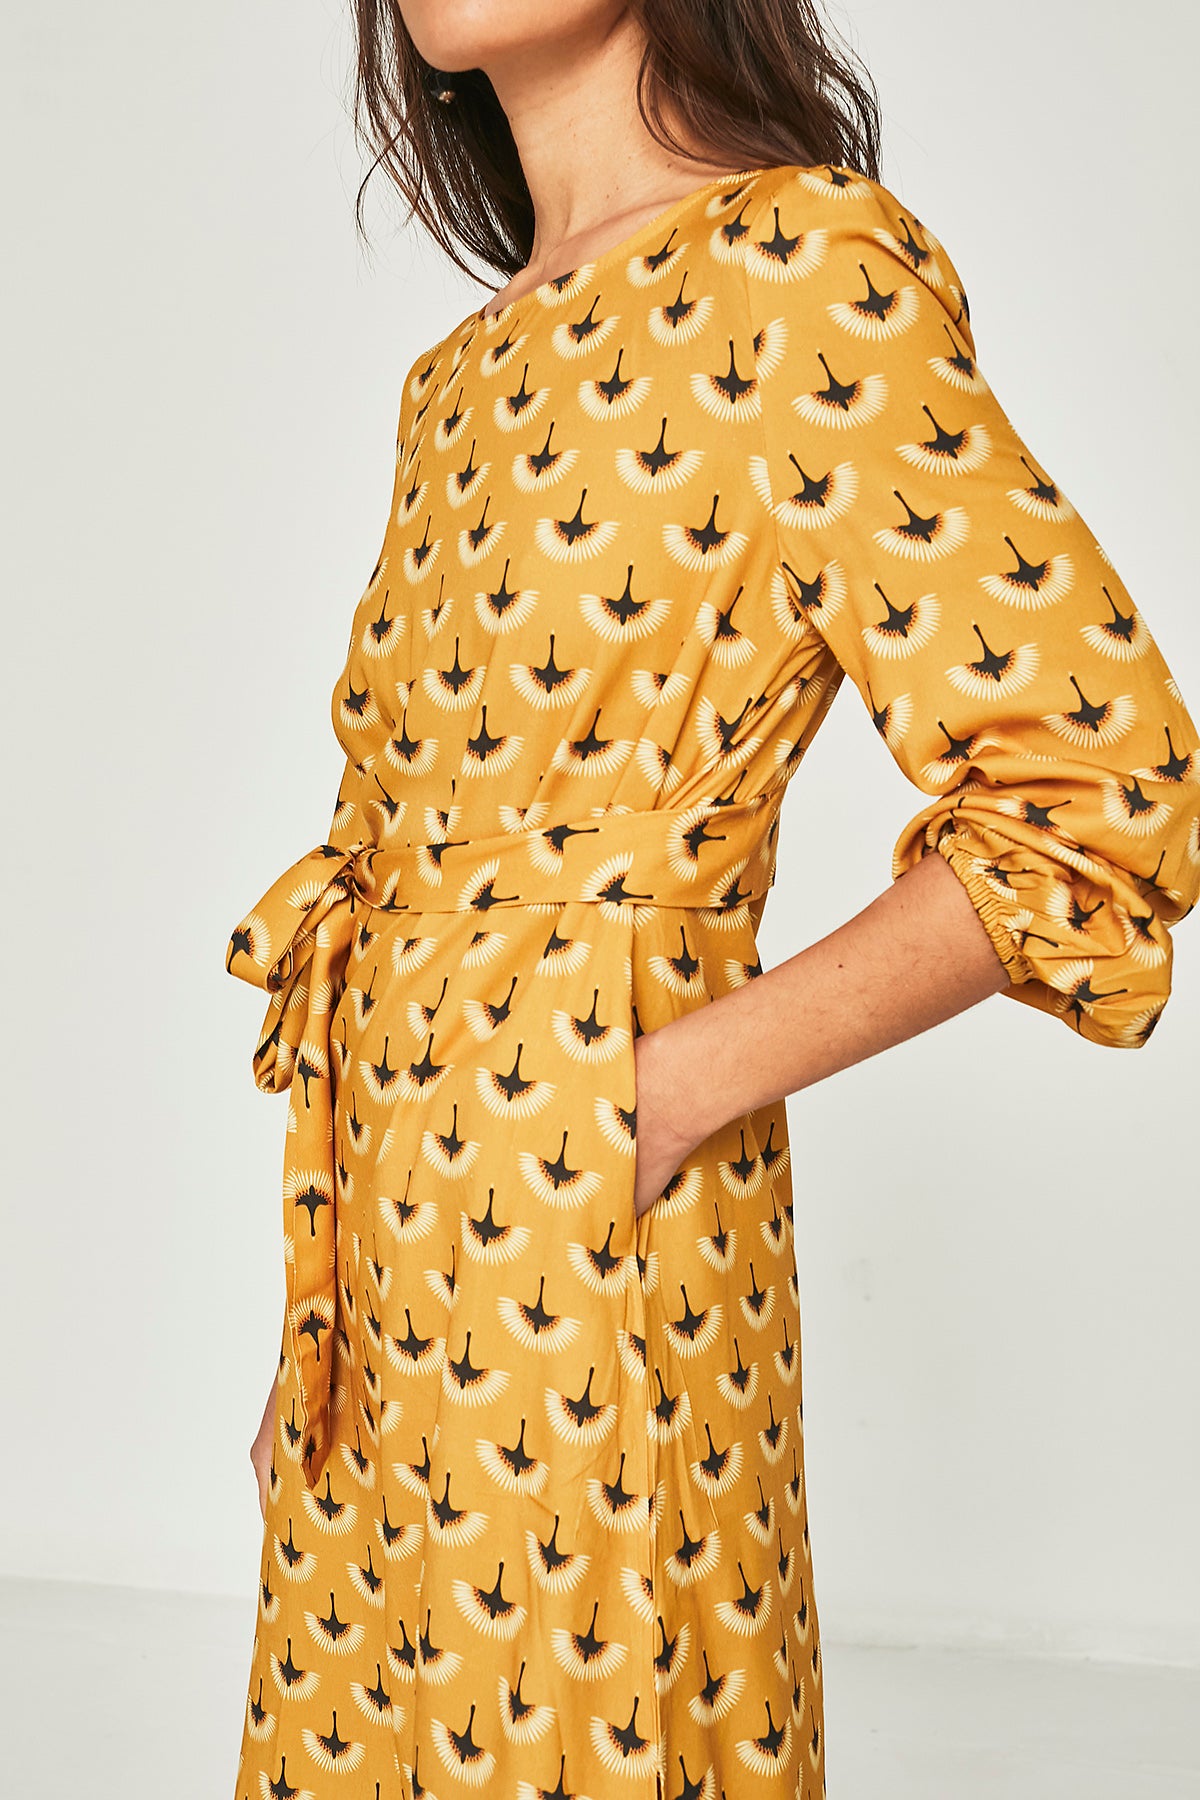 Mustard poppy short dress